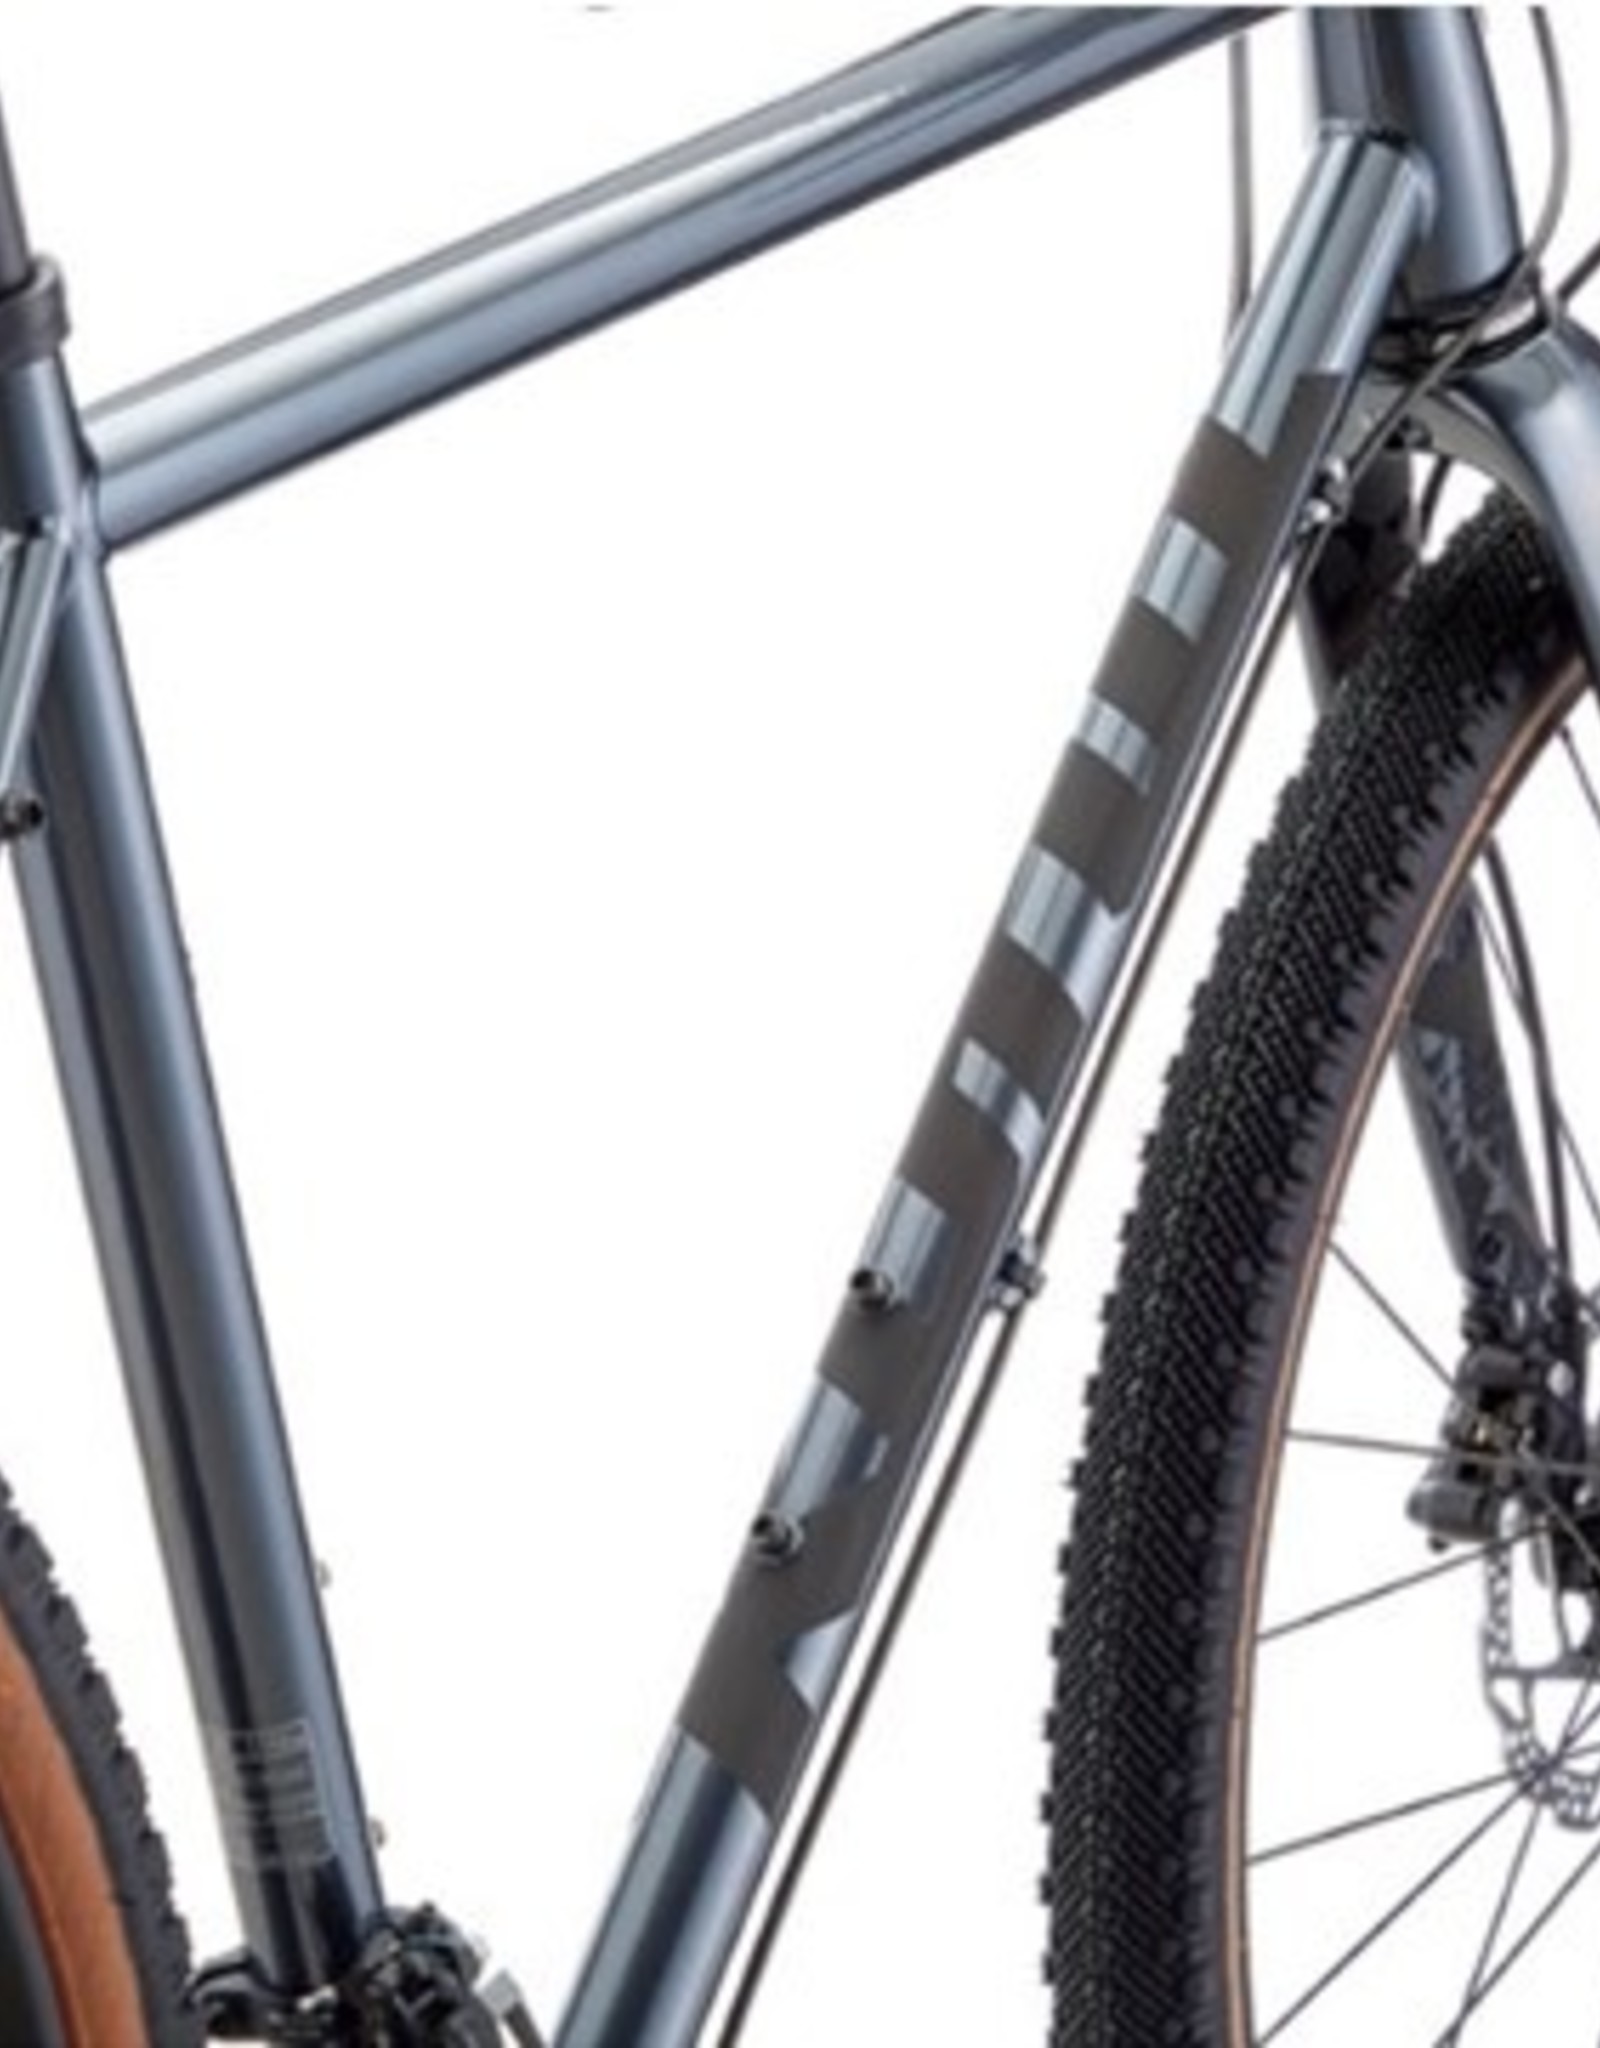 Kona Bicycles Kona Rove LTD (Faux Dark Chrome) 2022